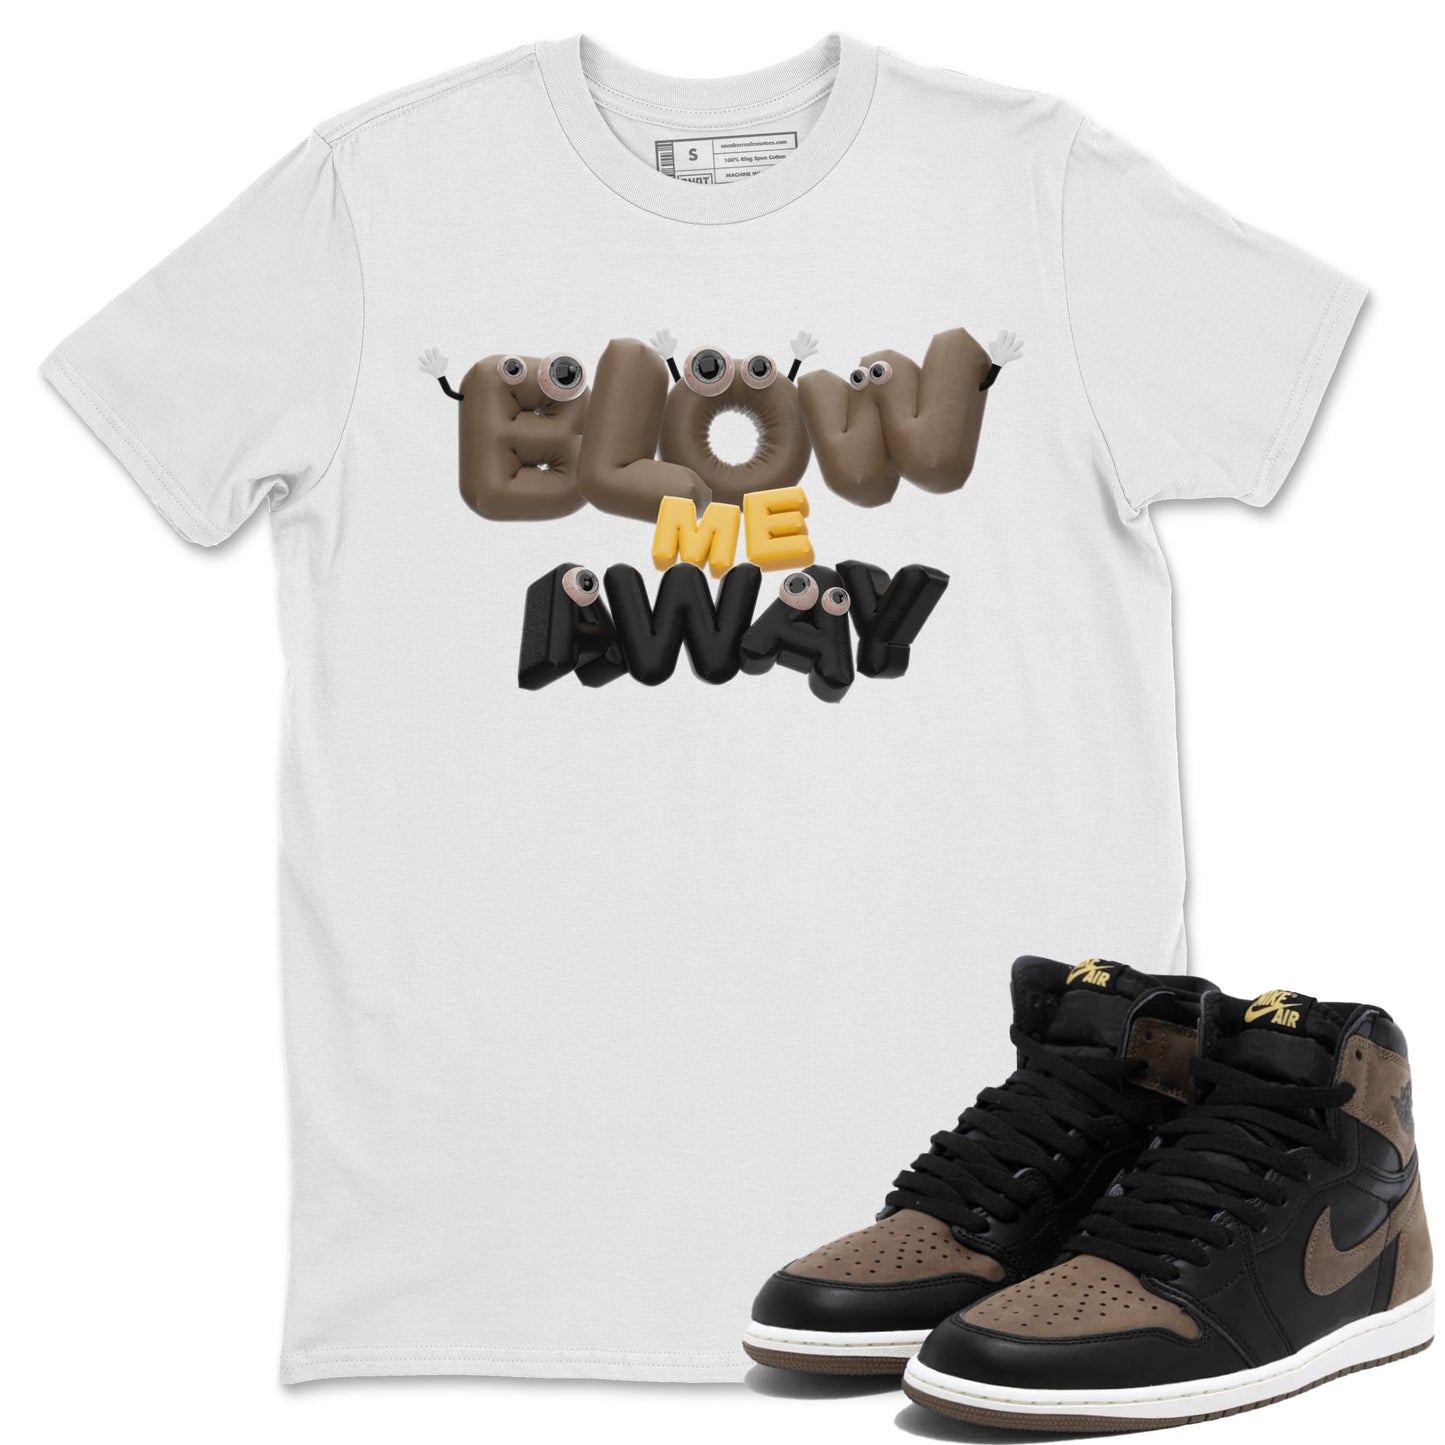 Air Jordan 1 Palomino shirt to match jordans Blow Me Away Streetwear Sneaker Shirt AJ1 Palomino Drip Gear Zone Sneaker Matching Clothing Unisex White 1 T-Shirt